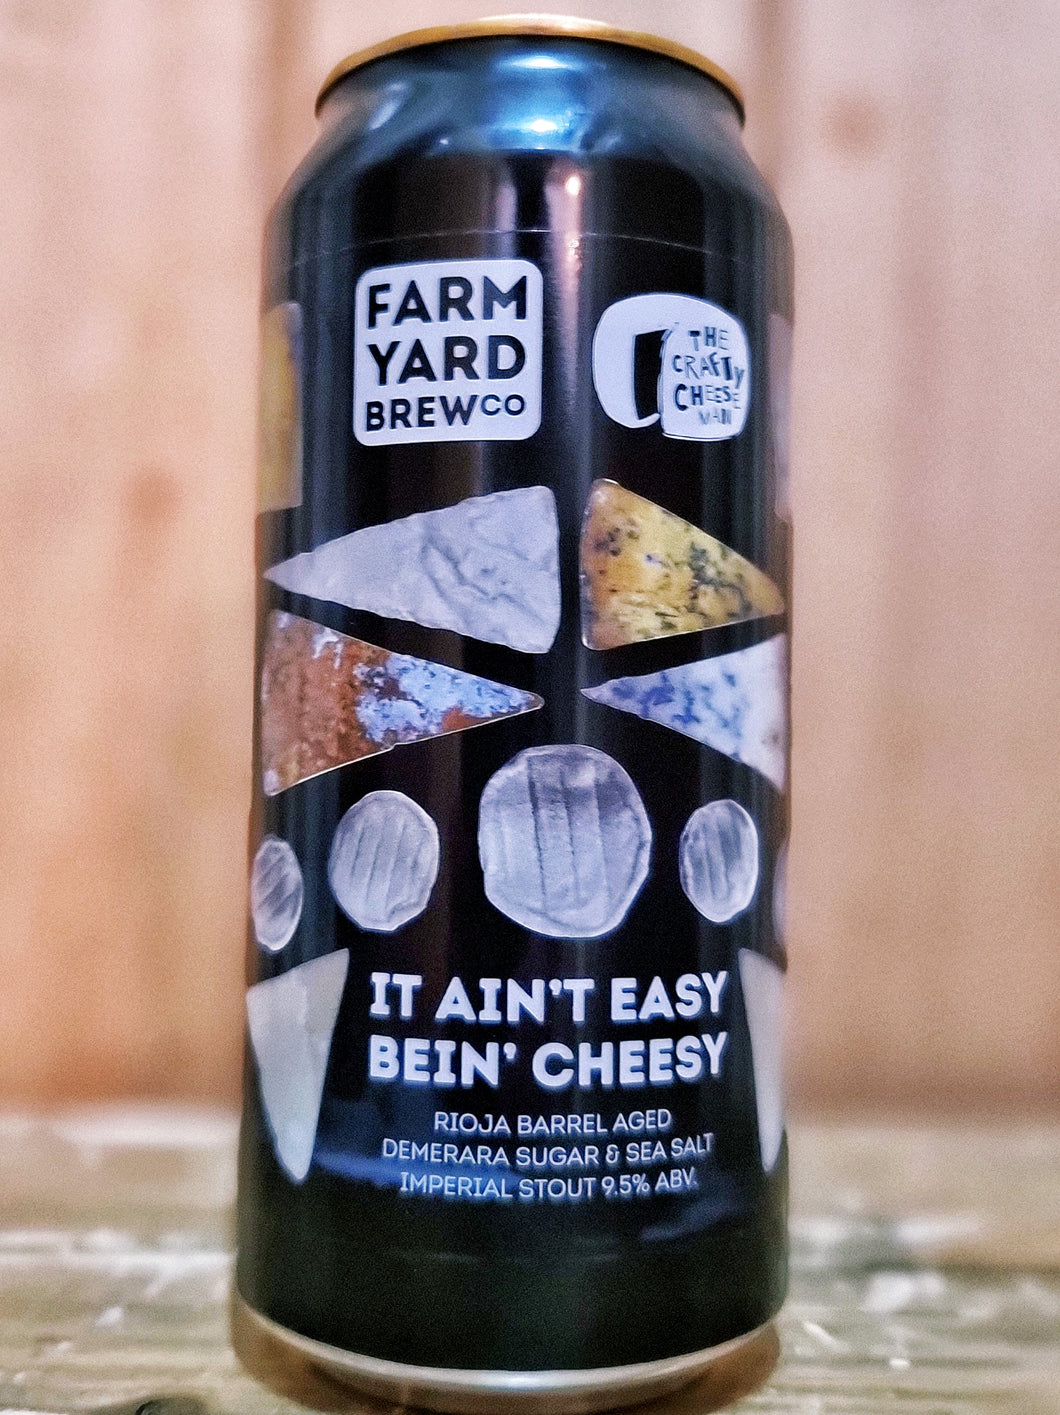 Farm Yard Brew Co - It Ain't Easy Being Cheesy